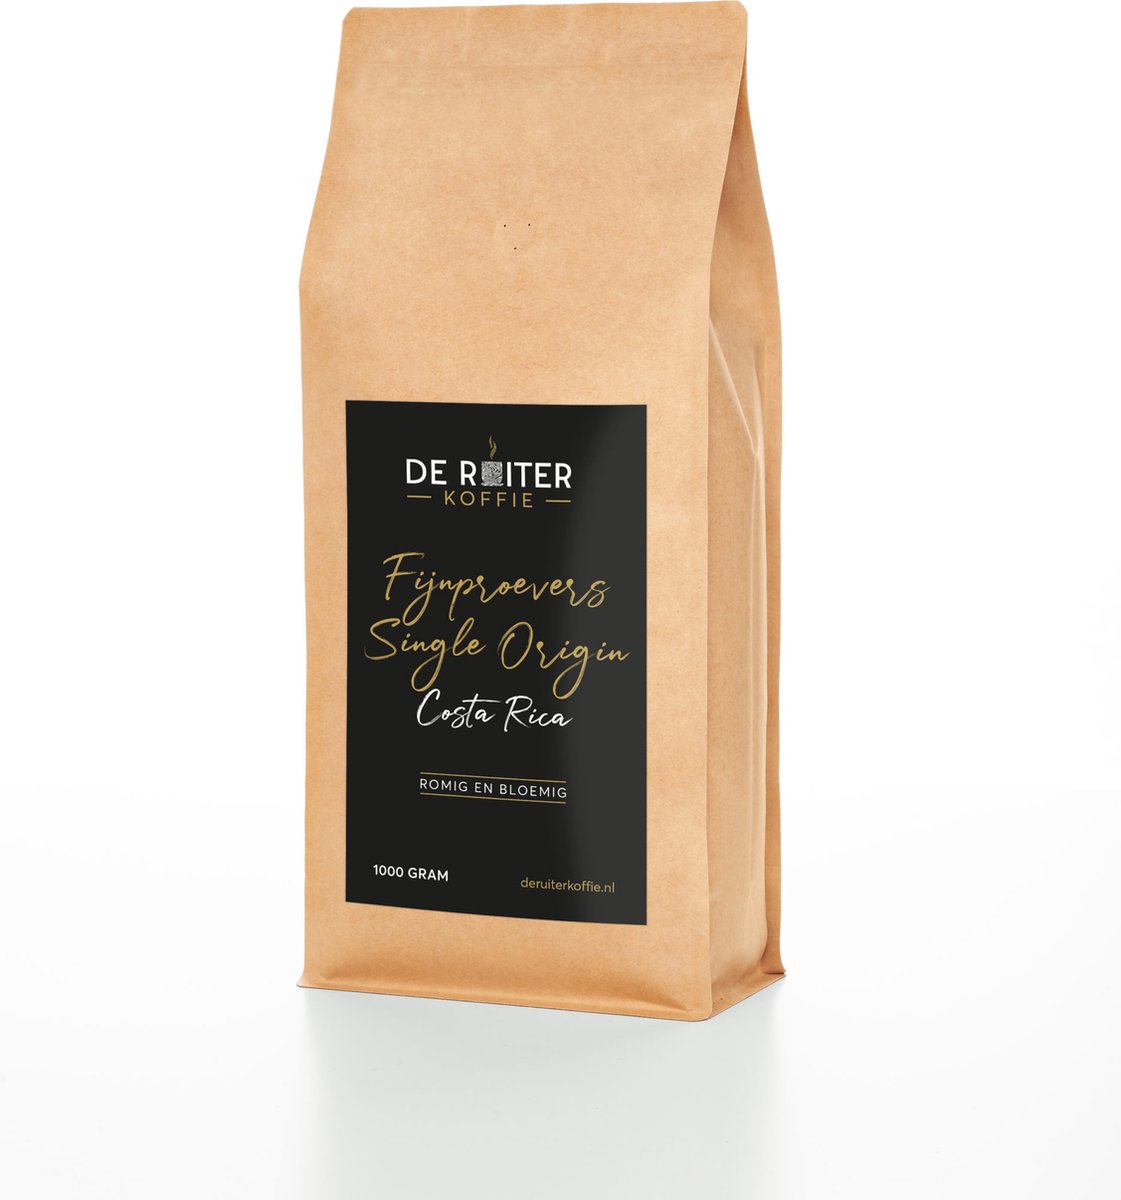 De Ruiter Koffie - Verse koffiebonen - Fijnproevers Single Origin, Costa Rica - 250 gram - Fijn gemalen